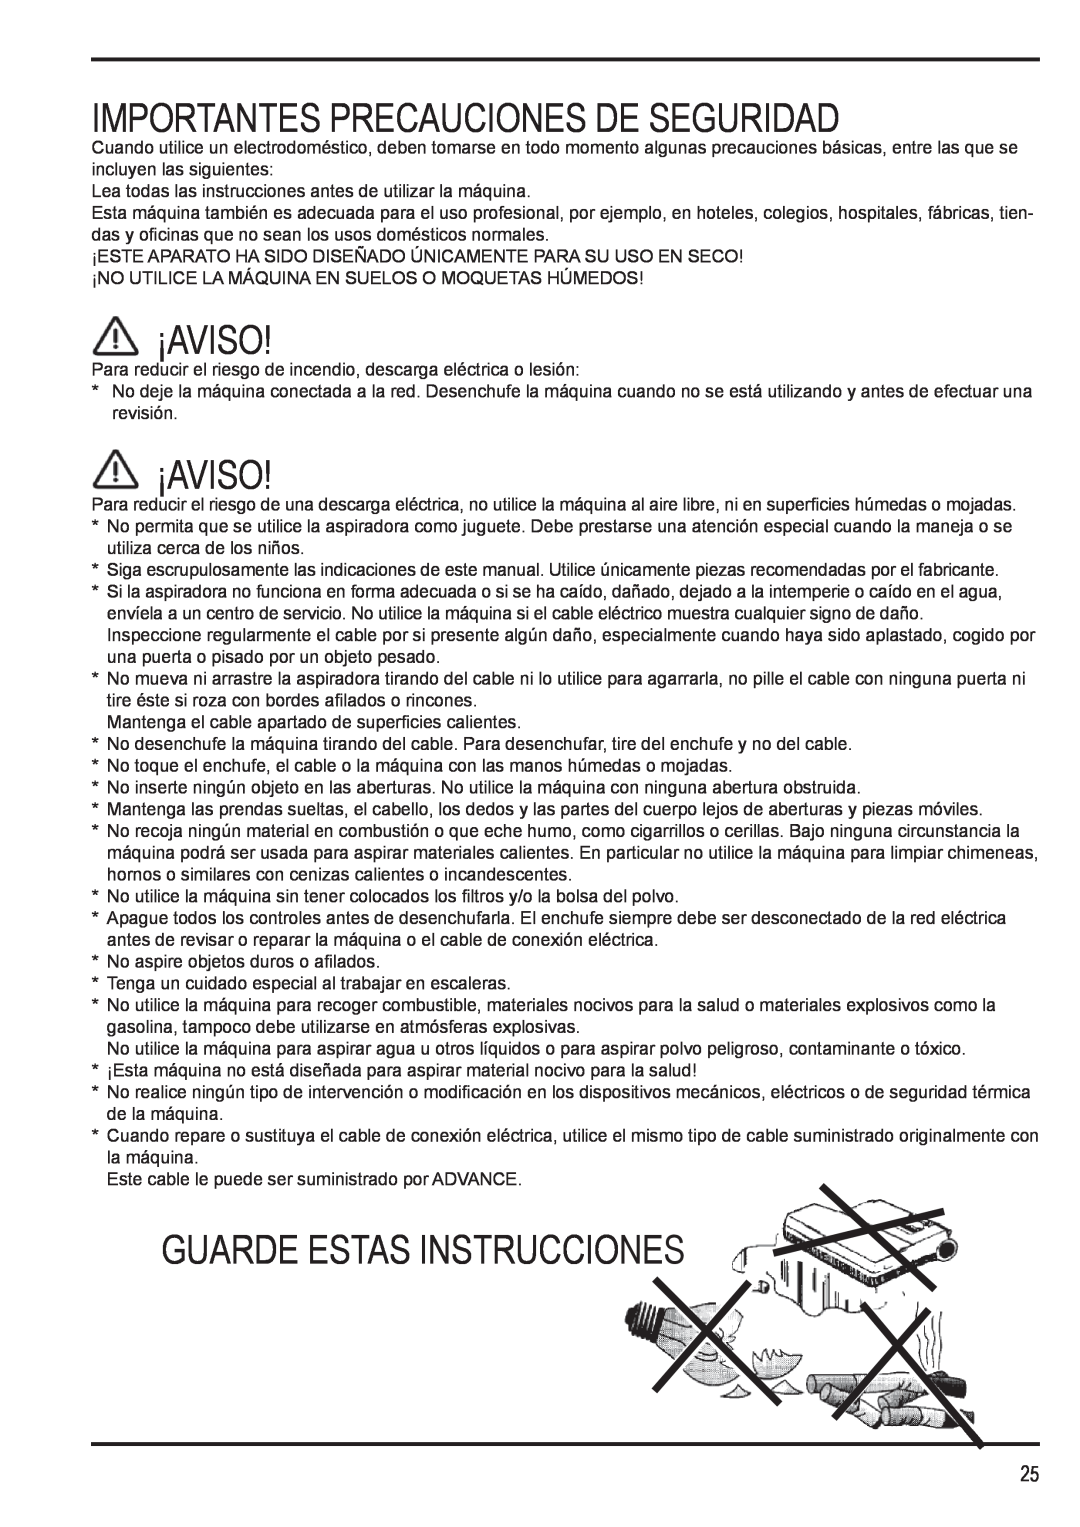 Nilfisk-Advance America 12H manual Importantes Precauciones De Seguridad, ¡Aviso, Guarde Estas Instrucciones 